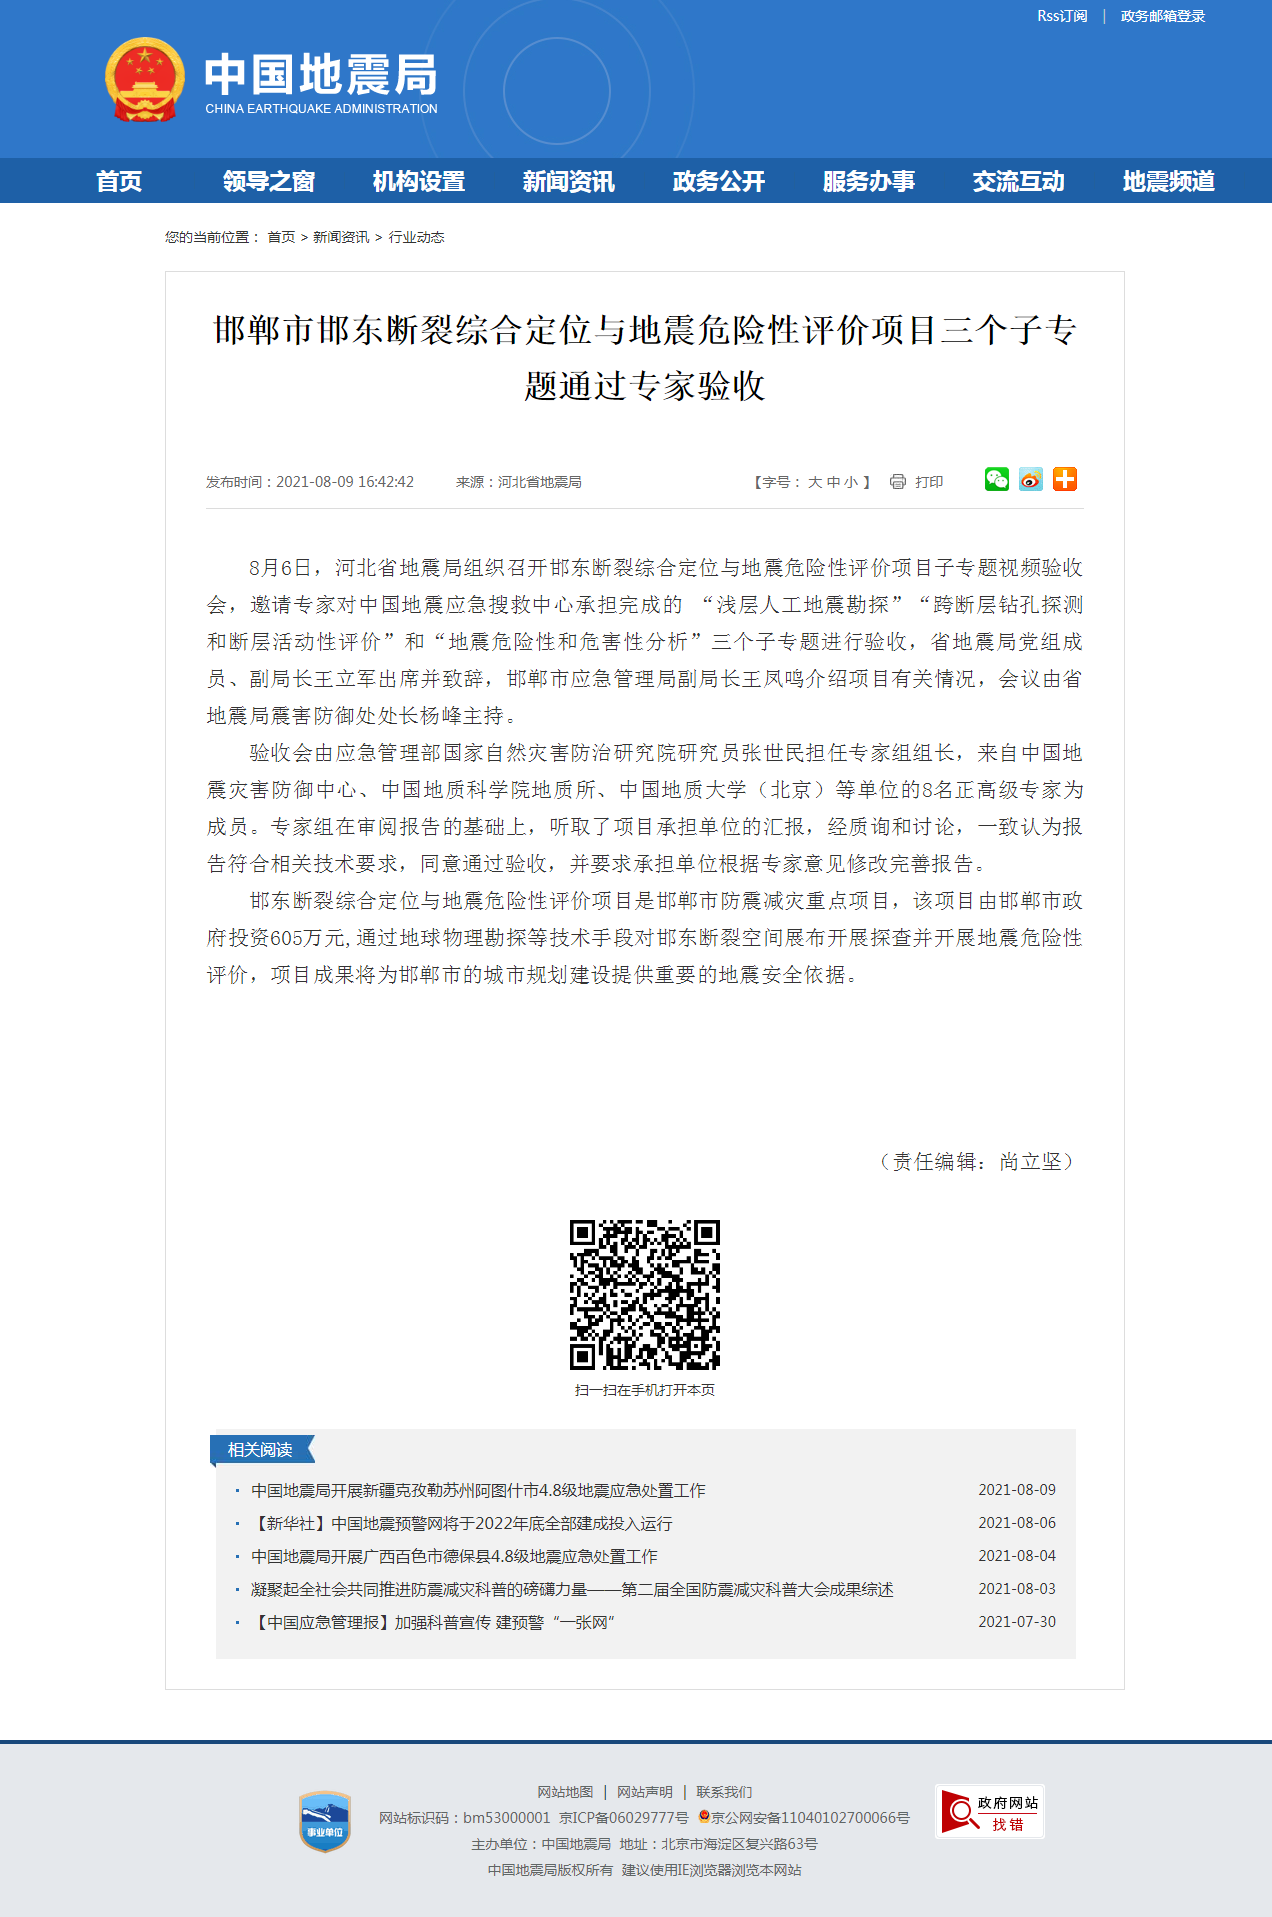 邯郸市邯东断裂综合定位与地震危险性评价项目三个子专题通过专家验收.png